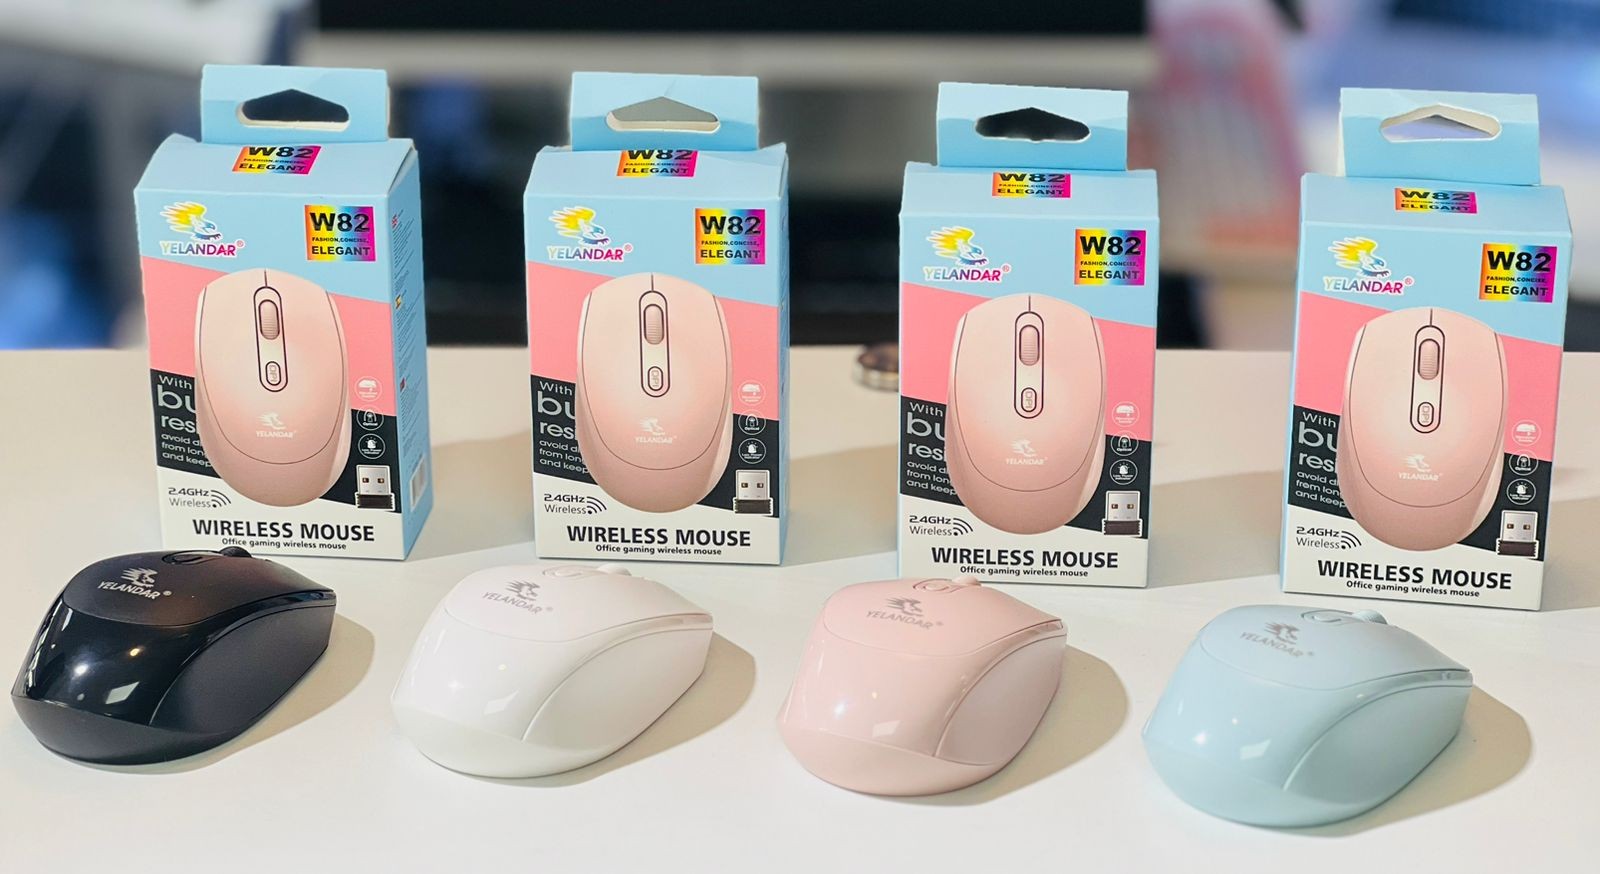 accesorios para electronica - Variedades de mouses inalámbrico 